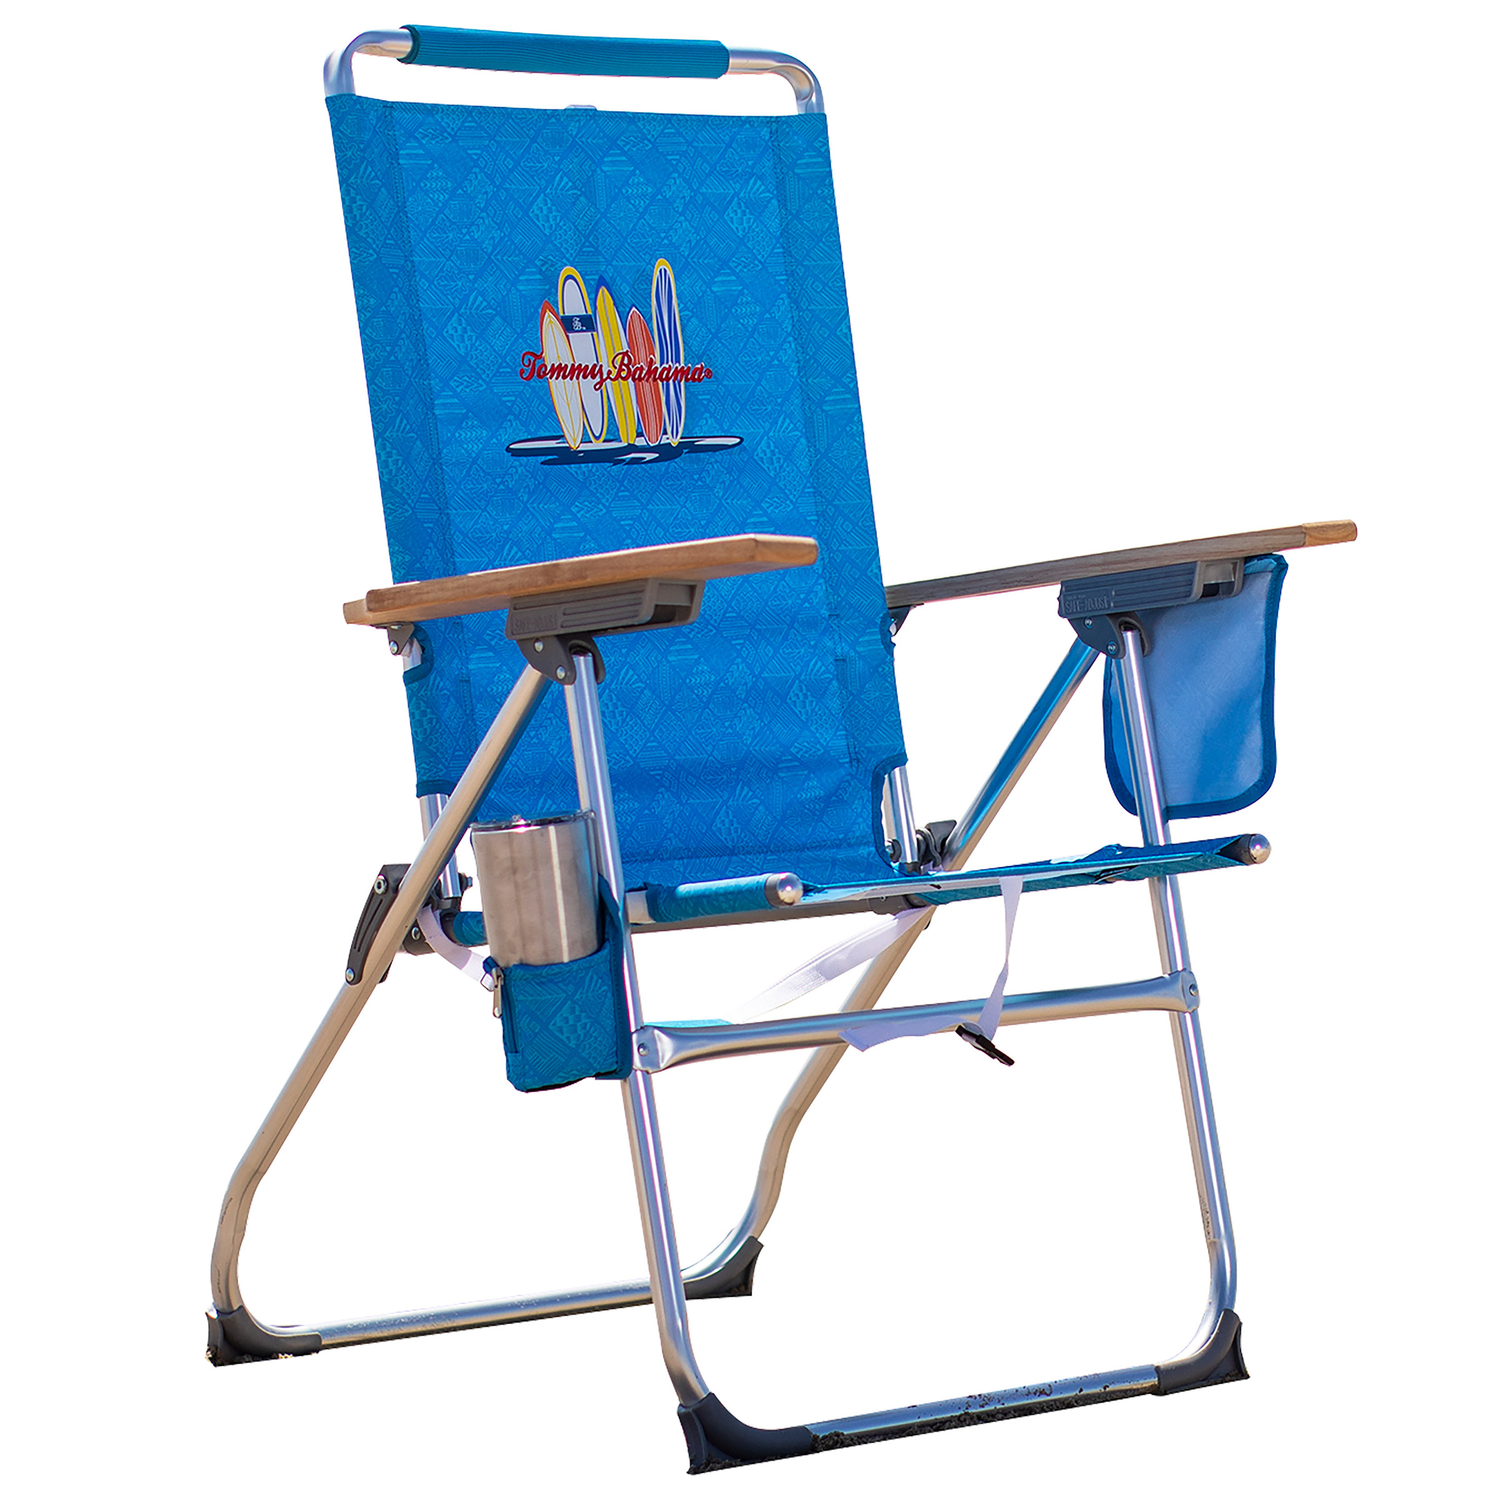 Tommy Bahama 7 Position Hi-Boy Beach Chair